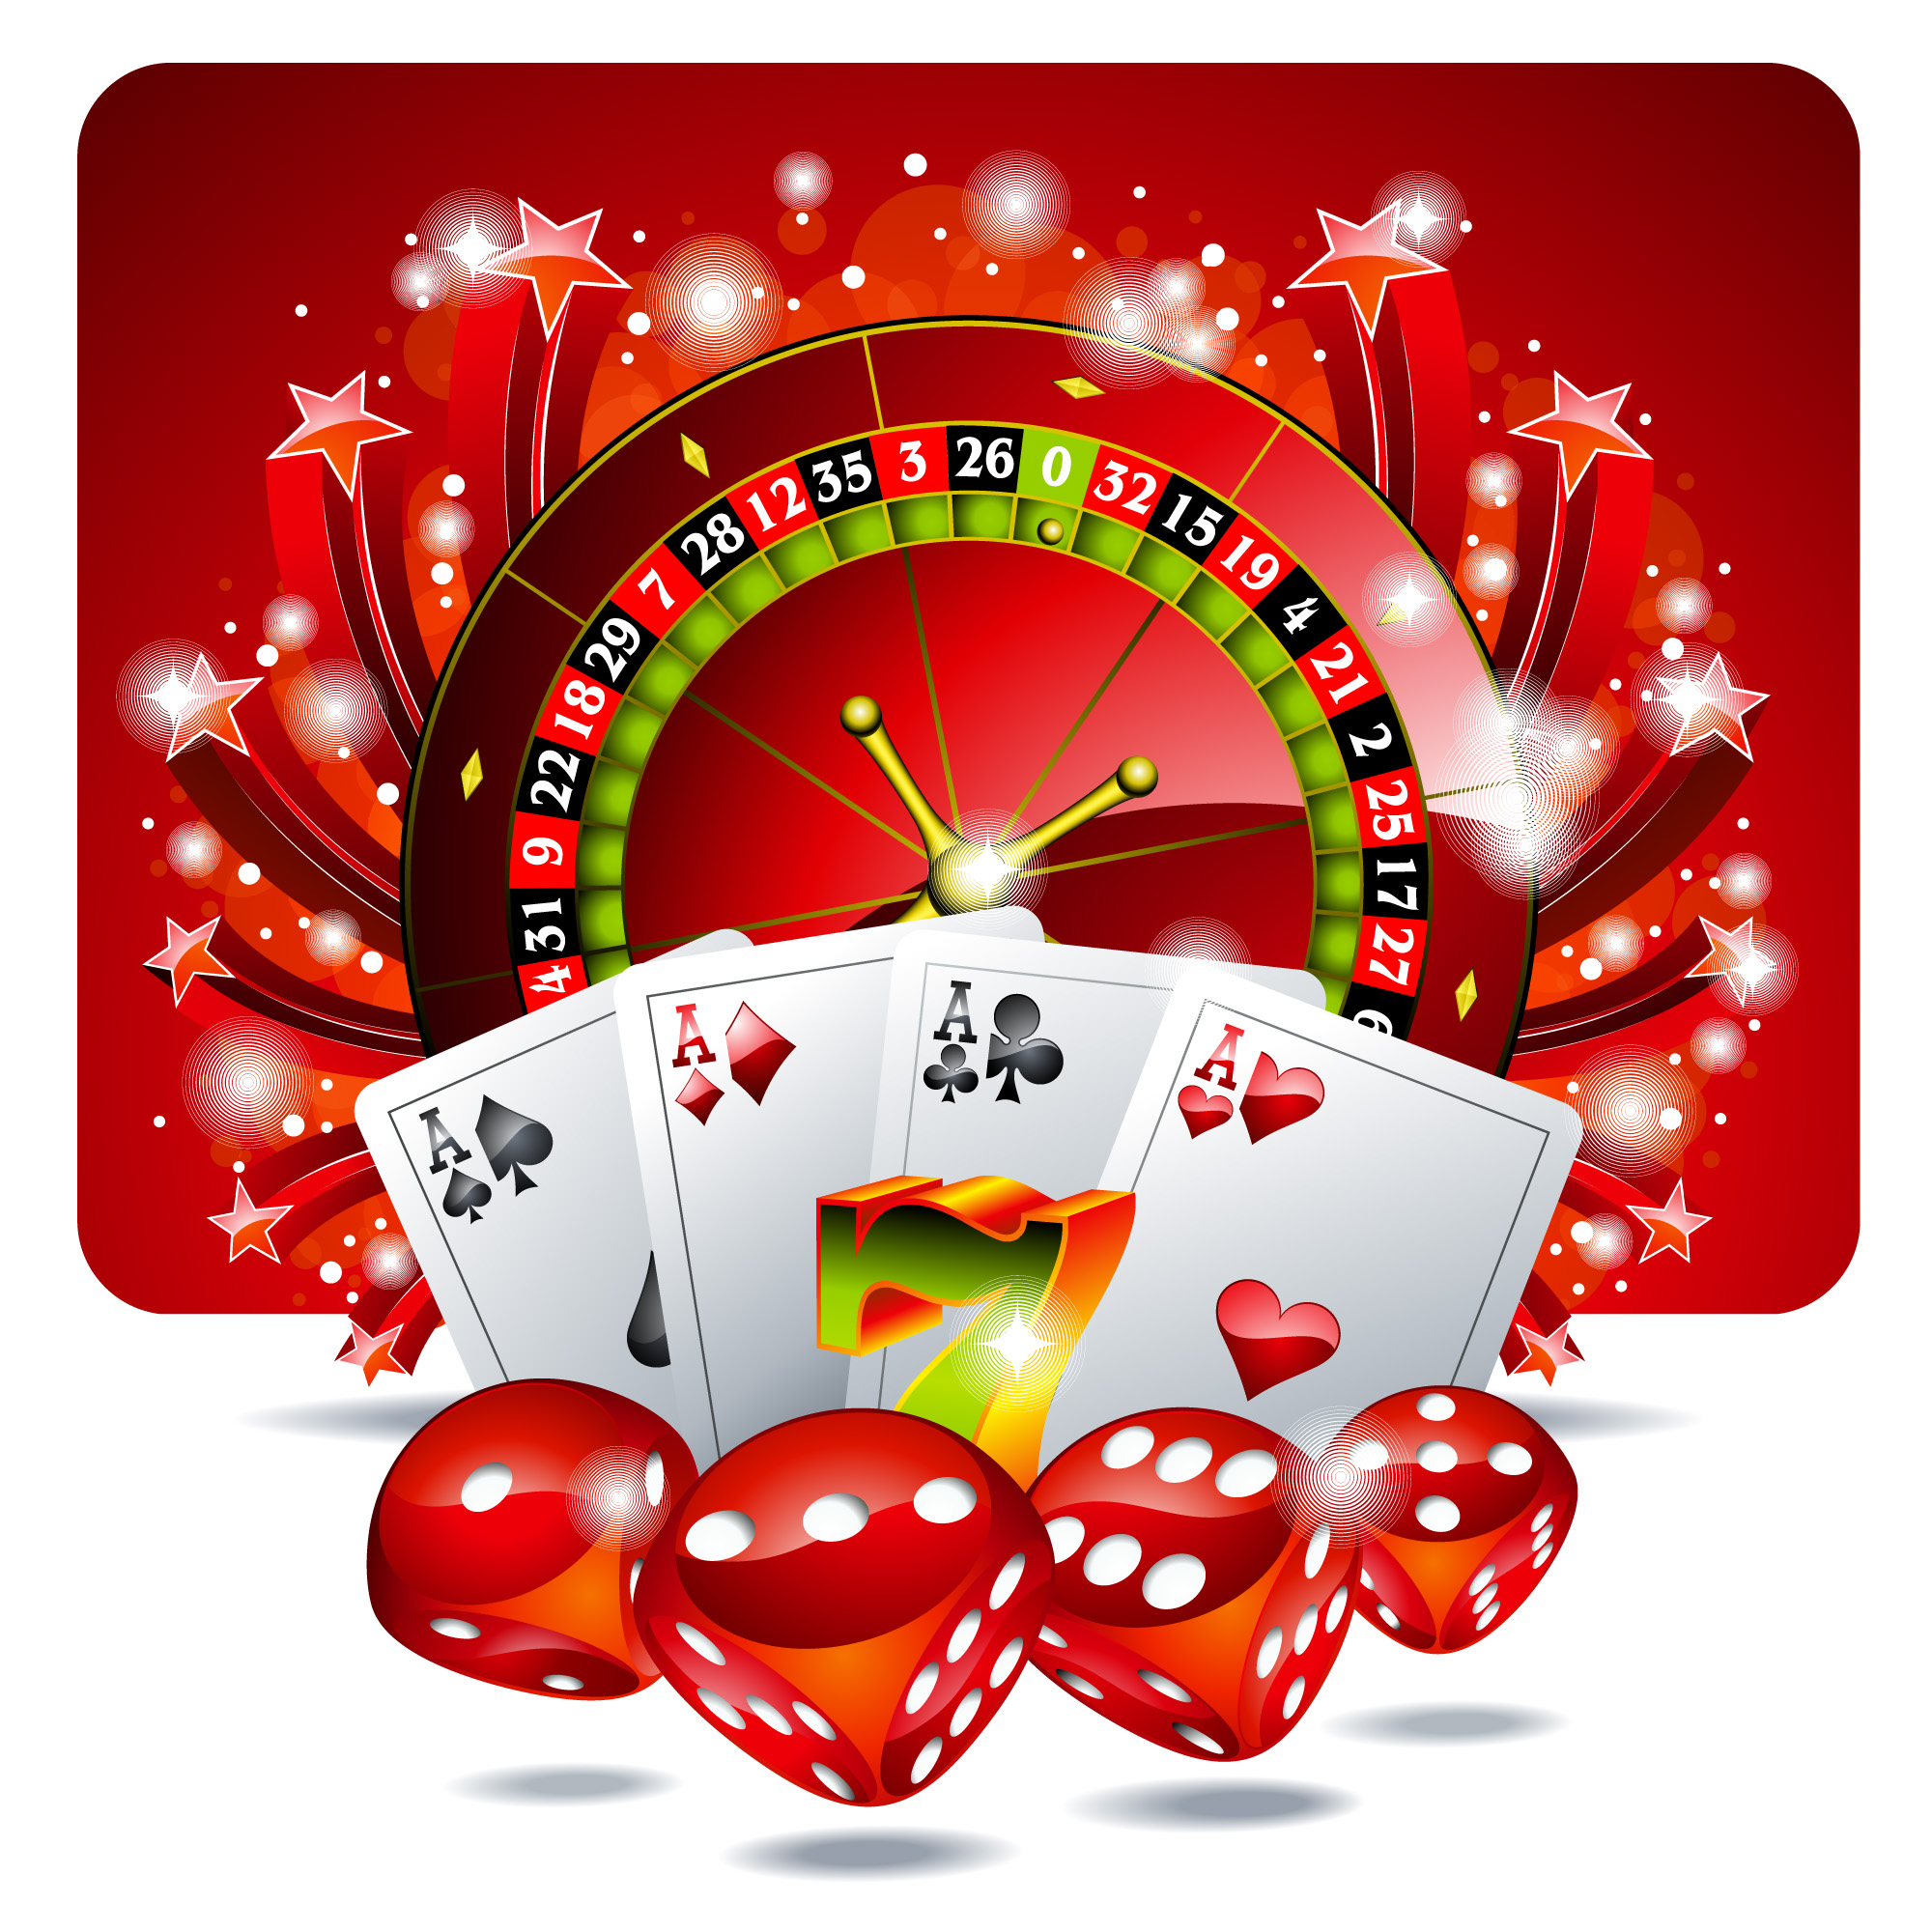 melhores casinos online com bónus de registo